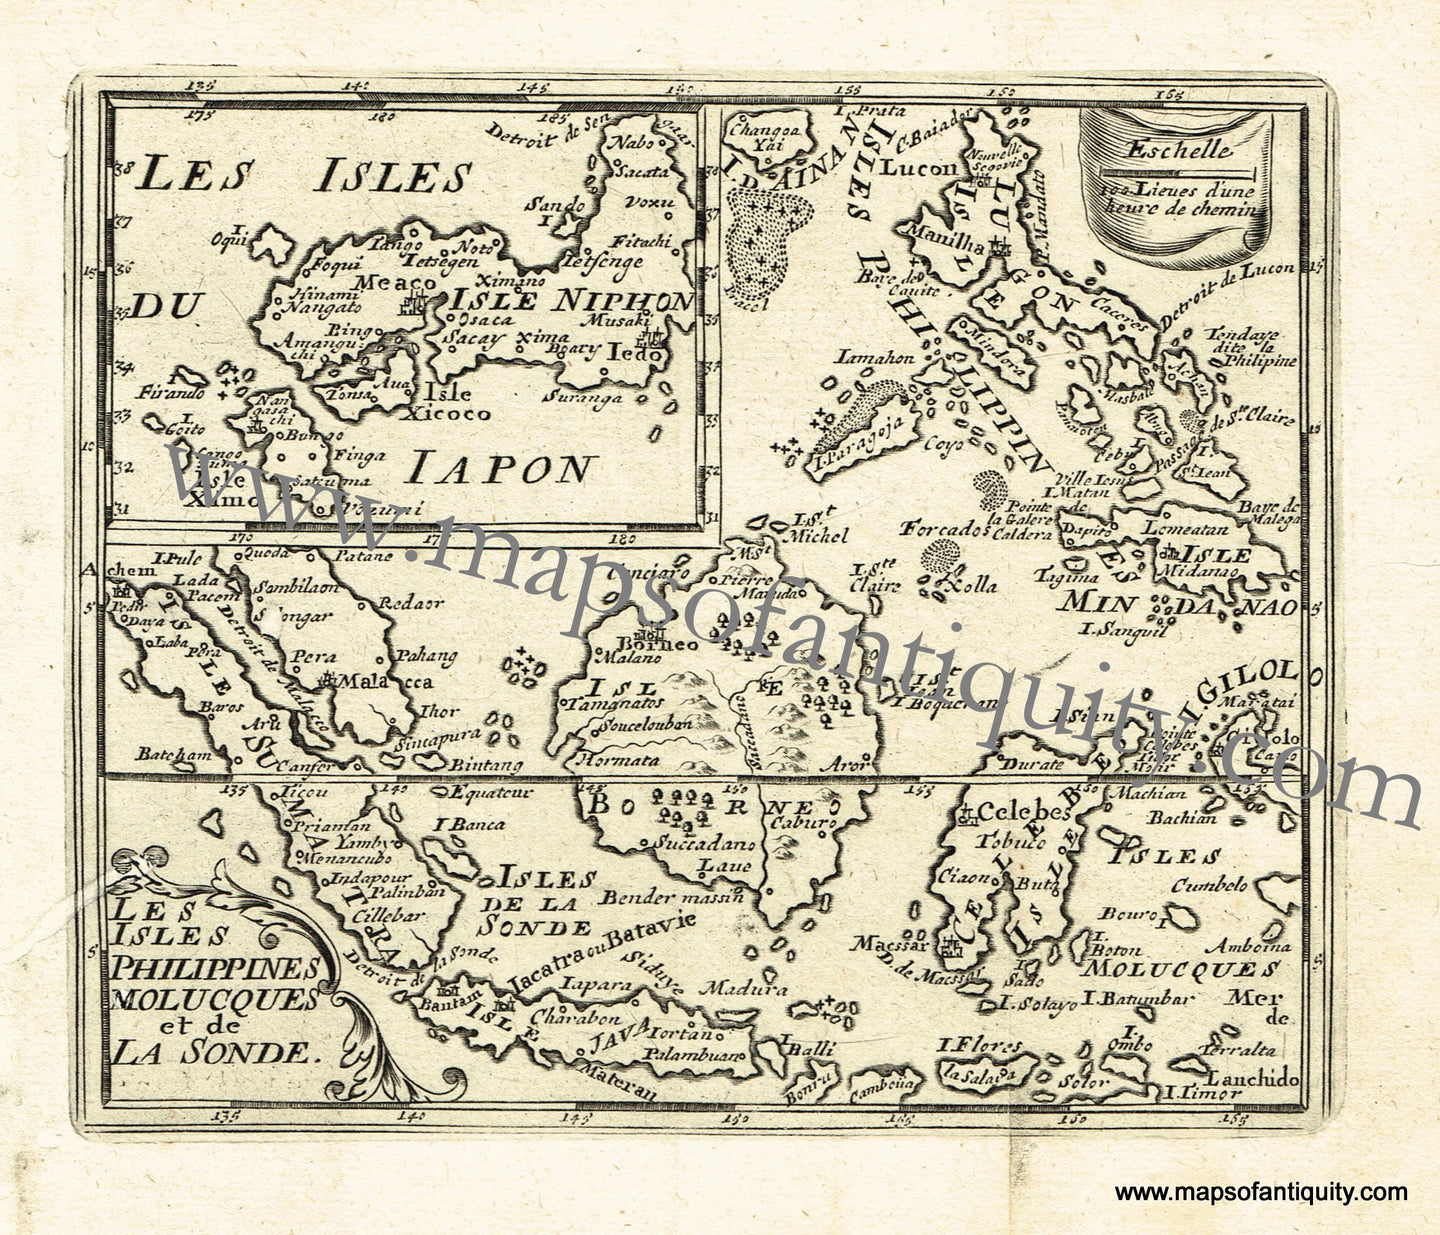 Antique-Black-and-White-Map-Les-Isles-Philippines-Molucques-et-de-la-Sonde-Asia-Southeast-Asia-1725-De-Aefferden-Maps-Of-Antiquity